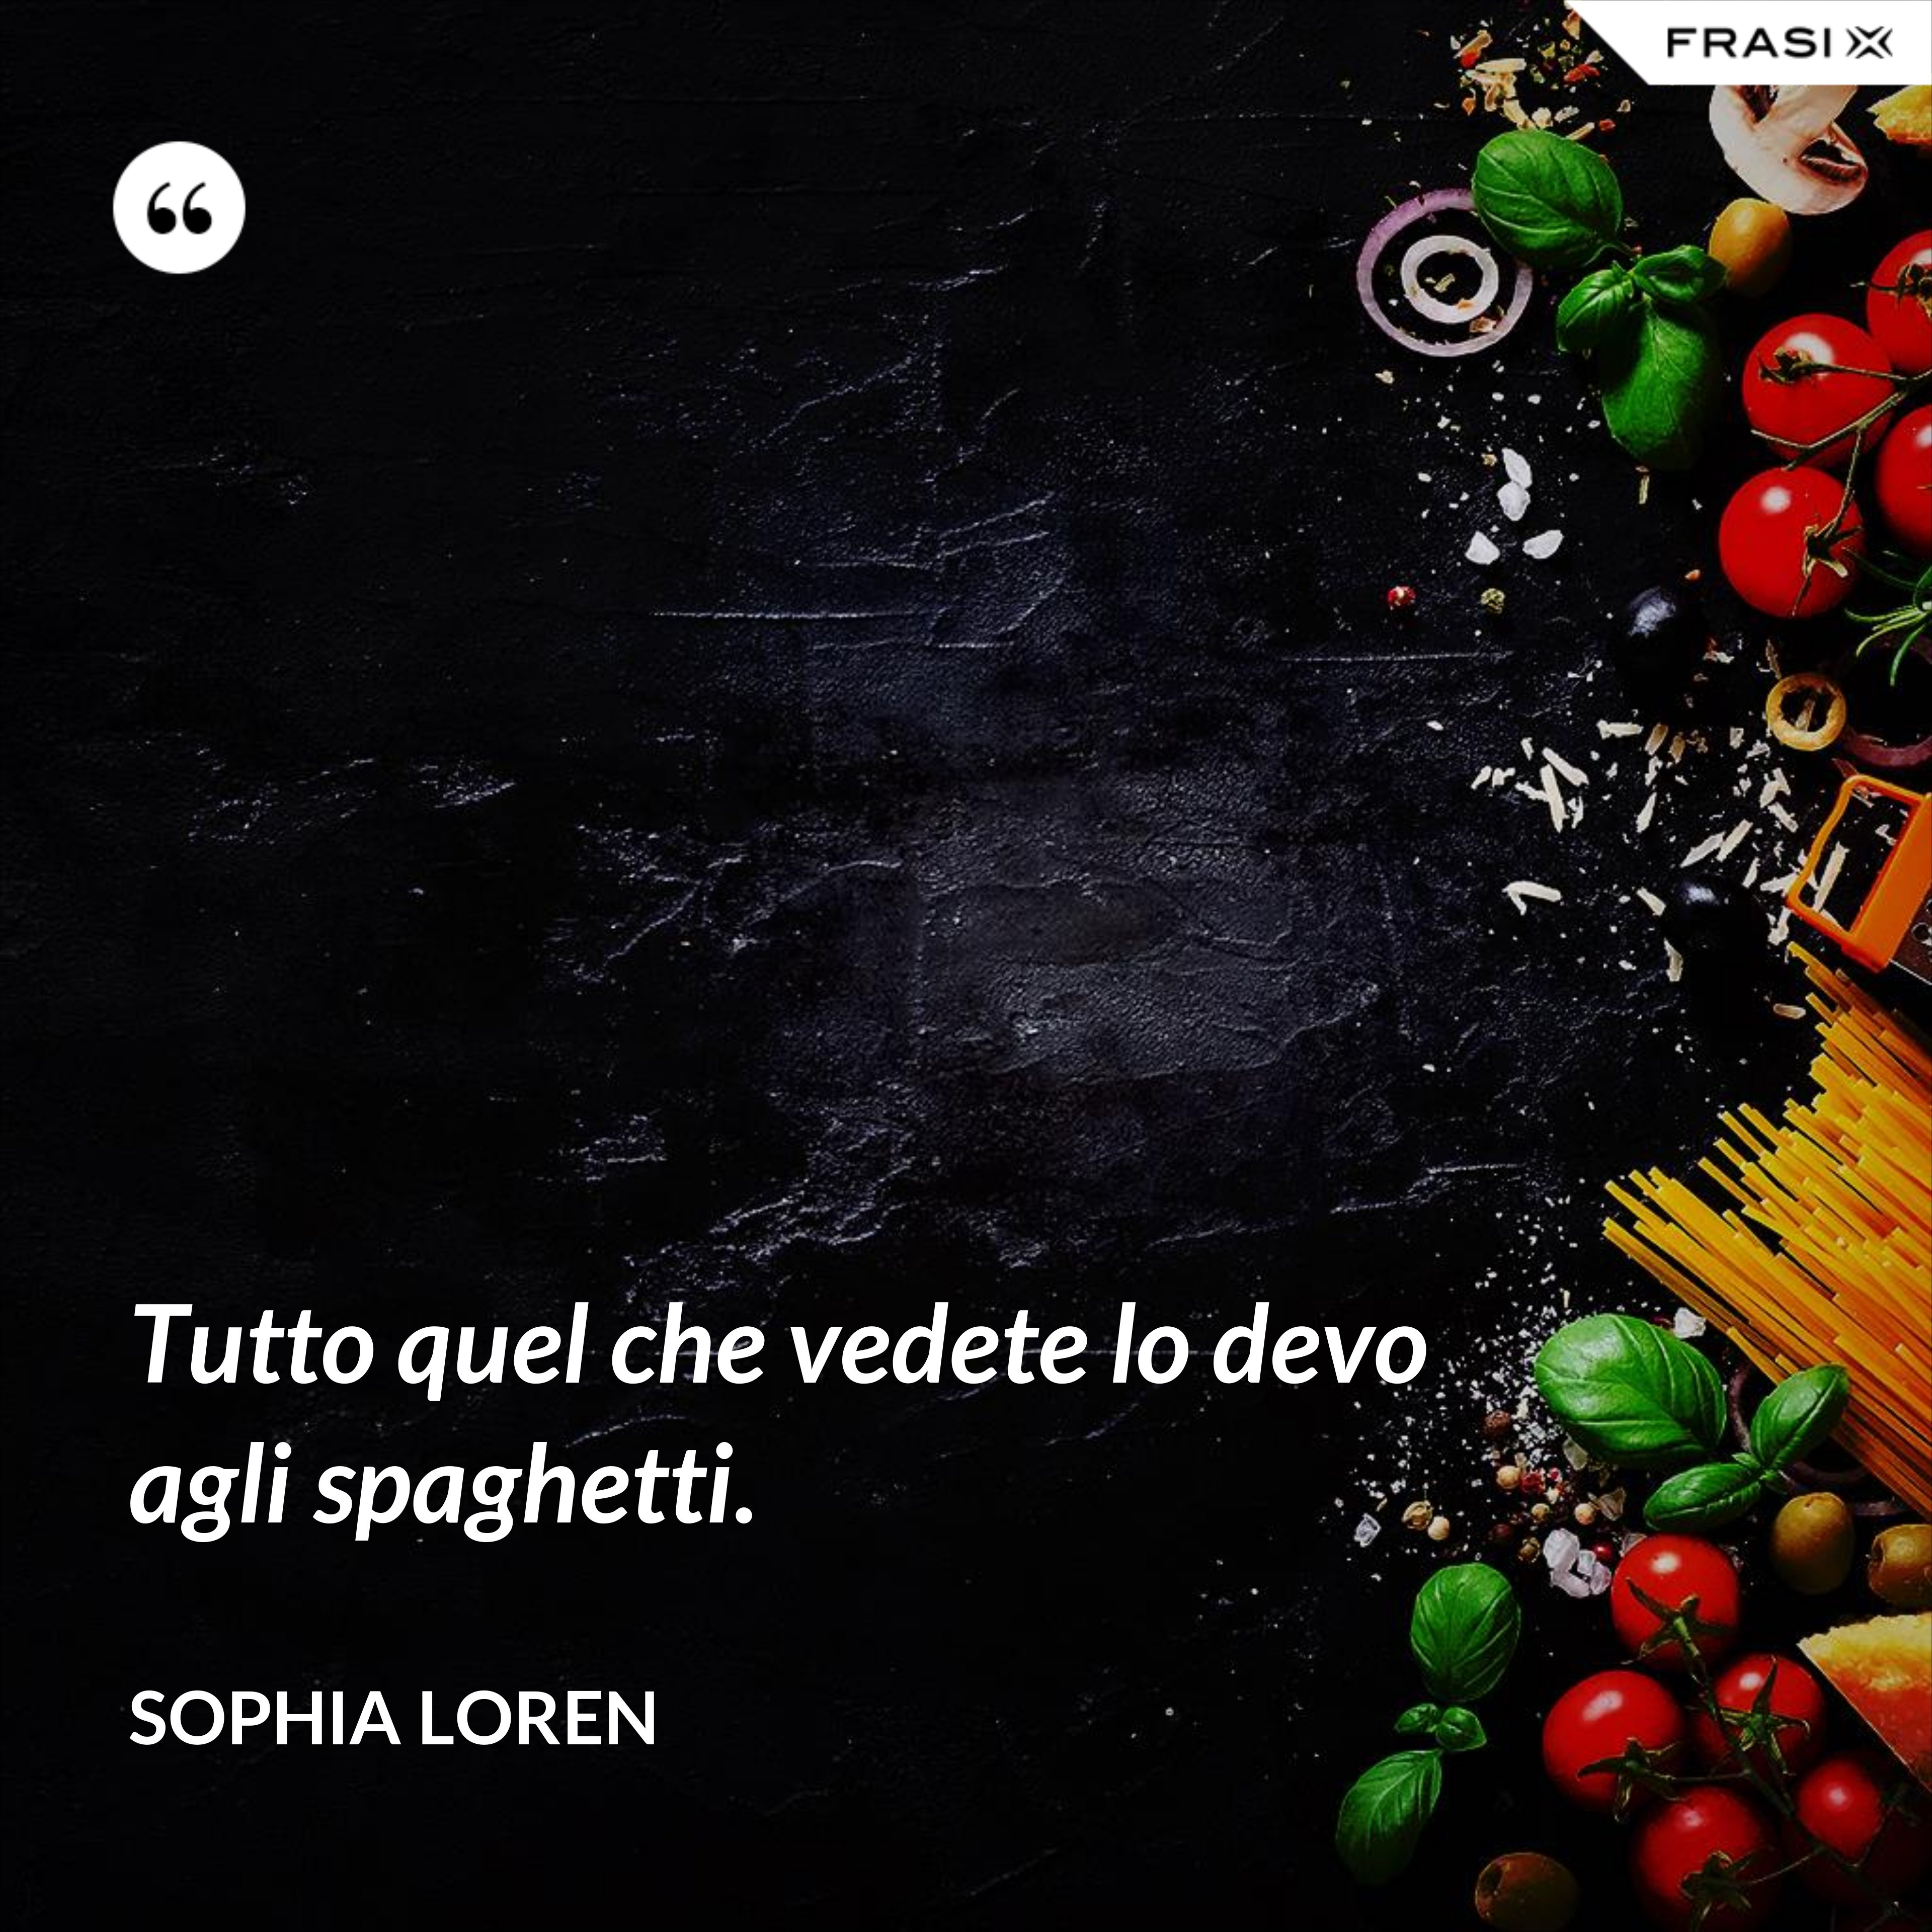 Tutto quel che vedete lo devo agli spaghetti. - Sophia Loren